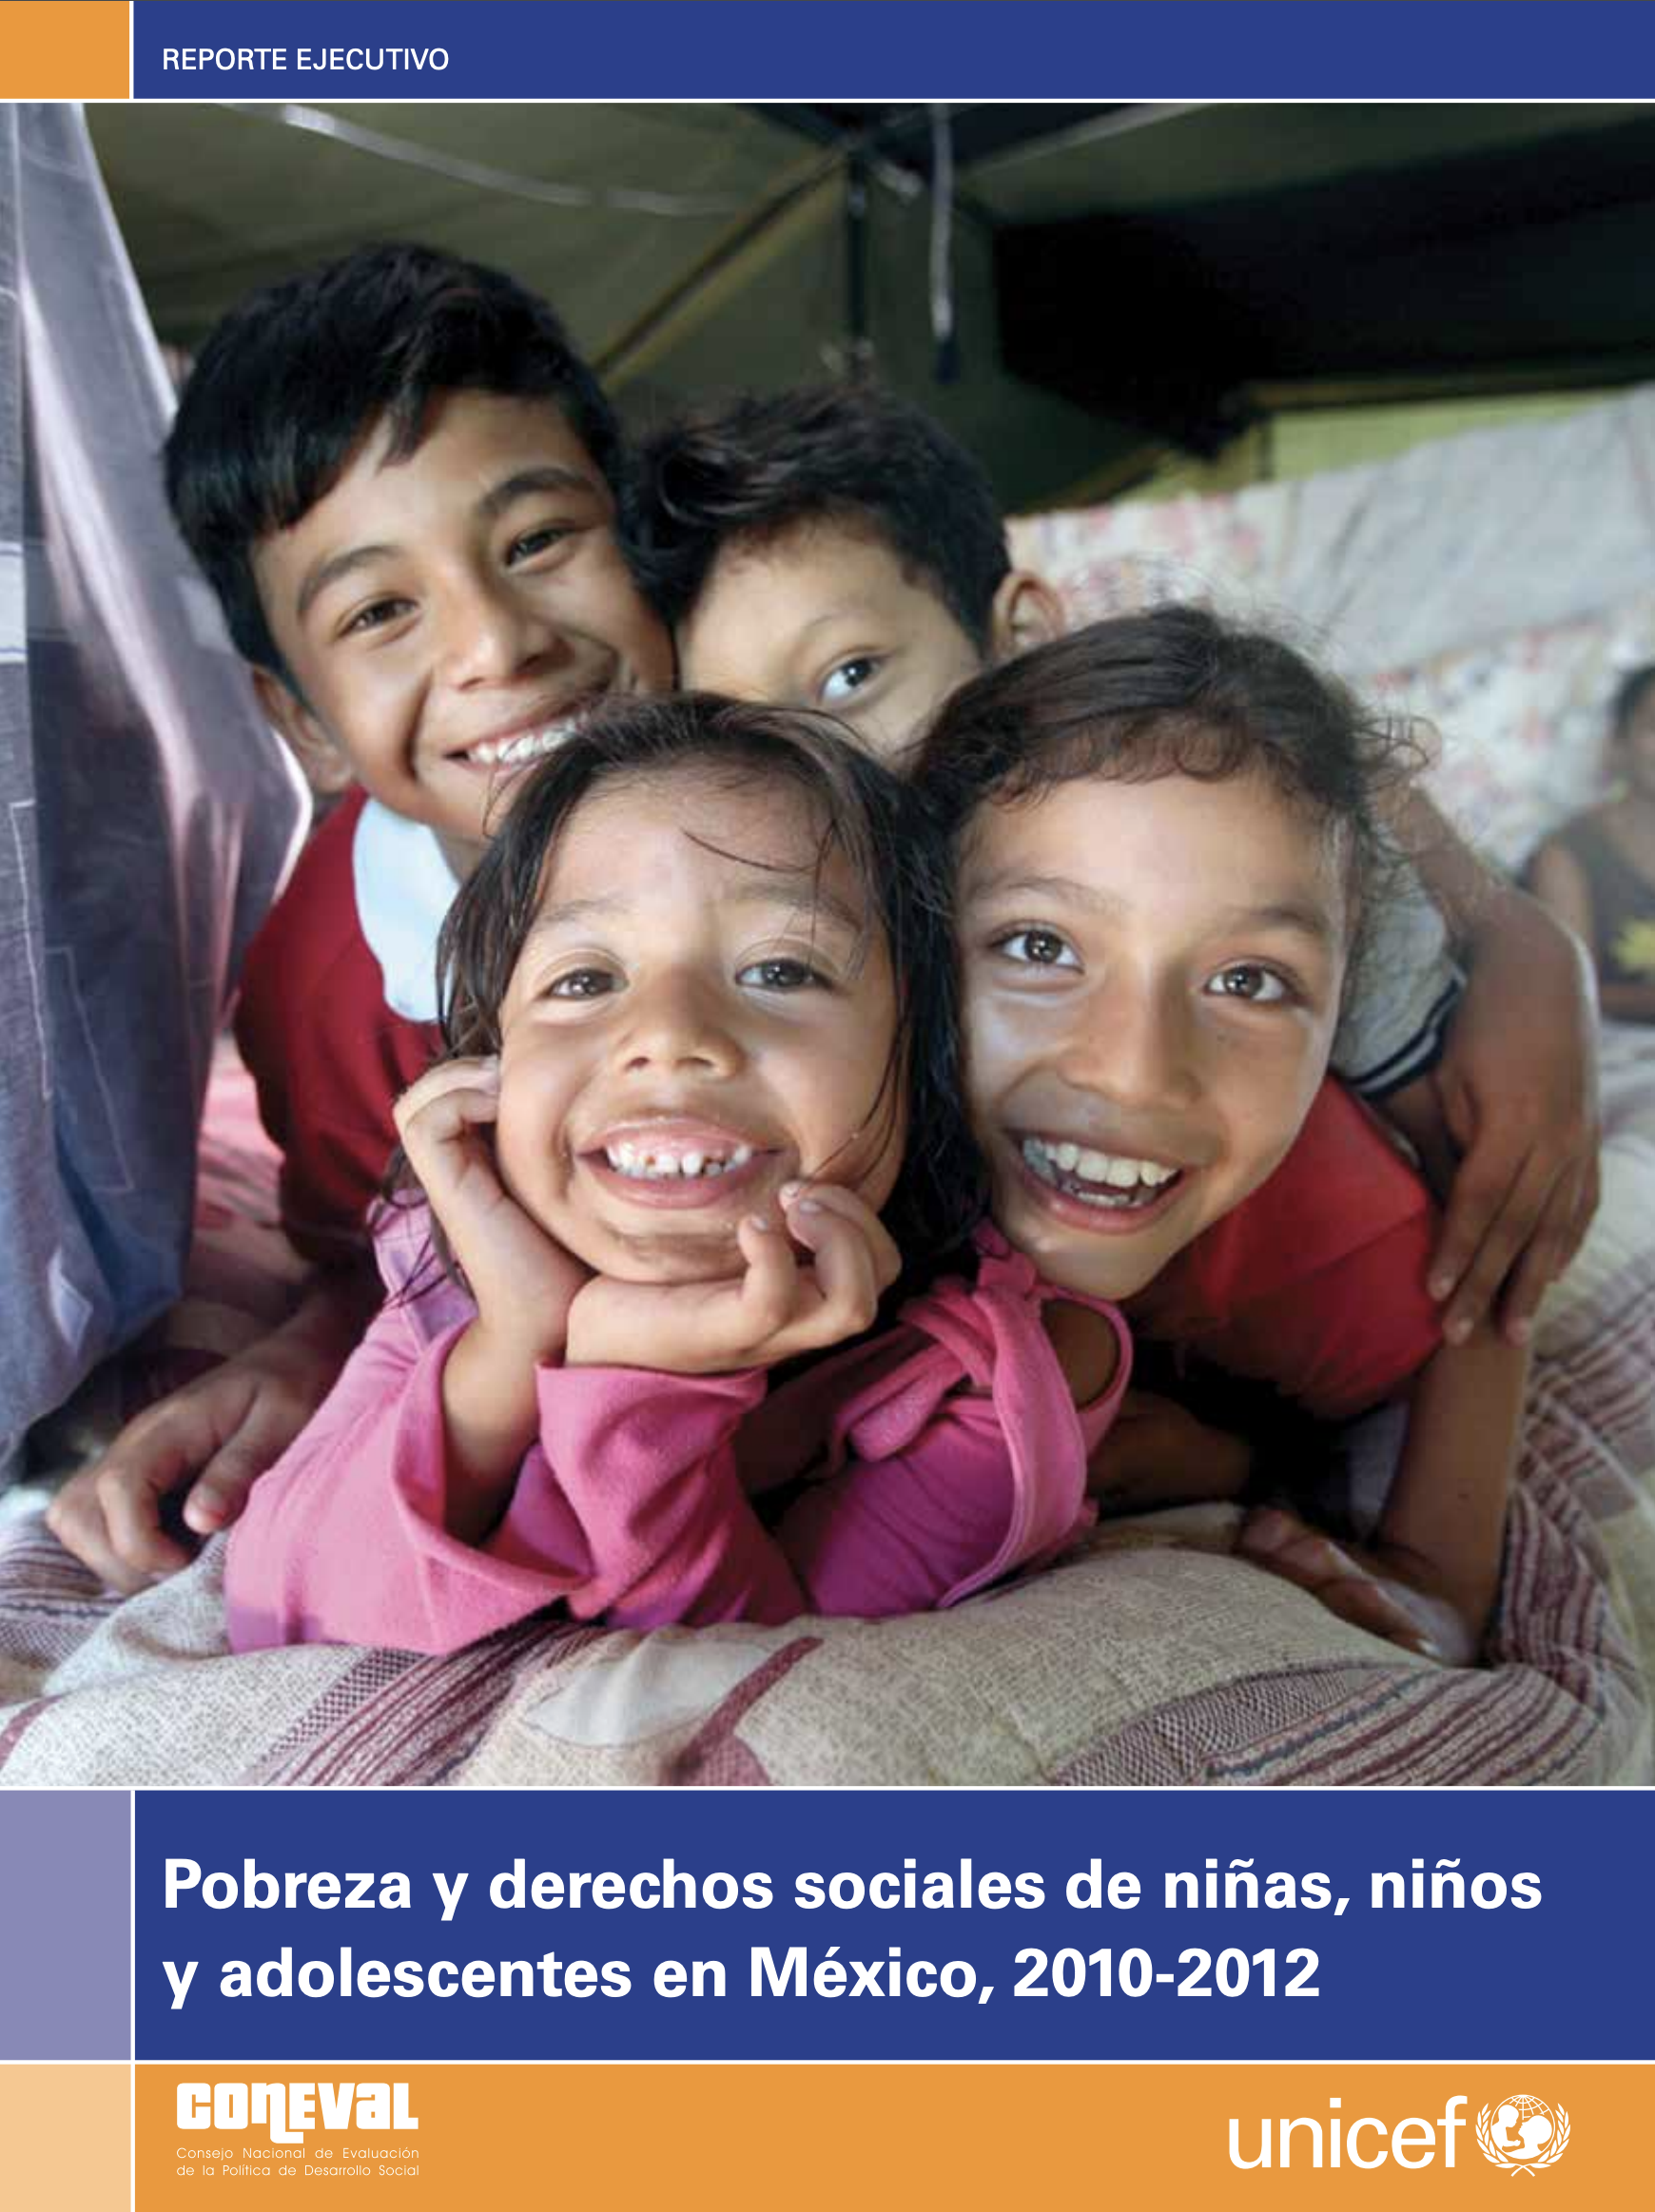 「Pobreza y derechos sociales de ninas, ninos y adolescentes en Mexico, 2010, UNICEF」